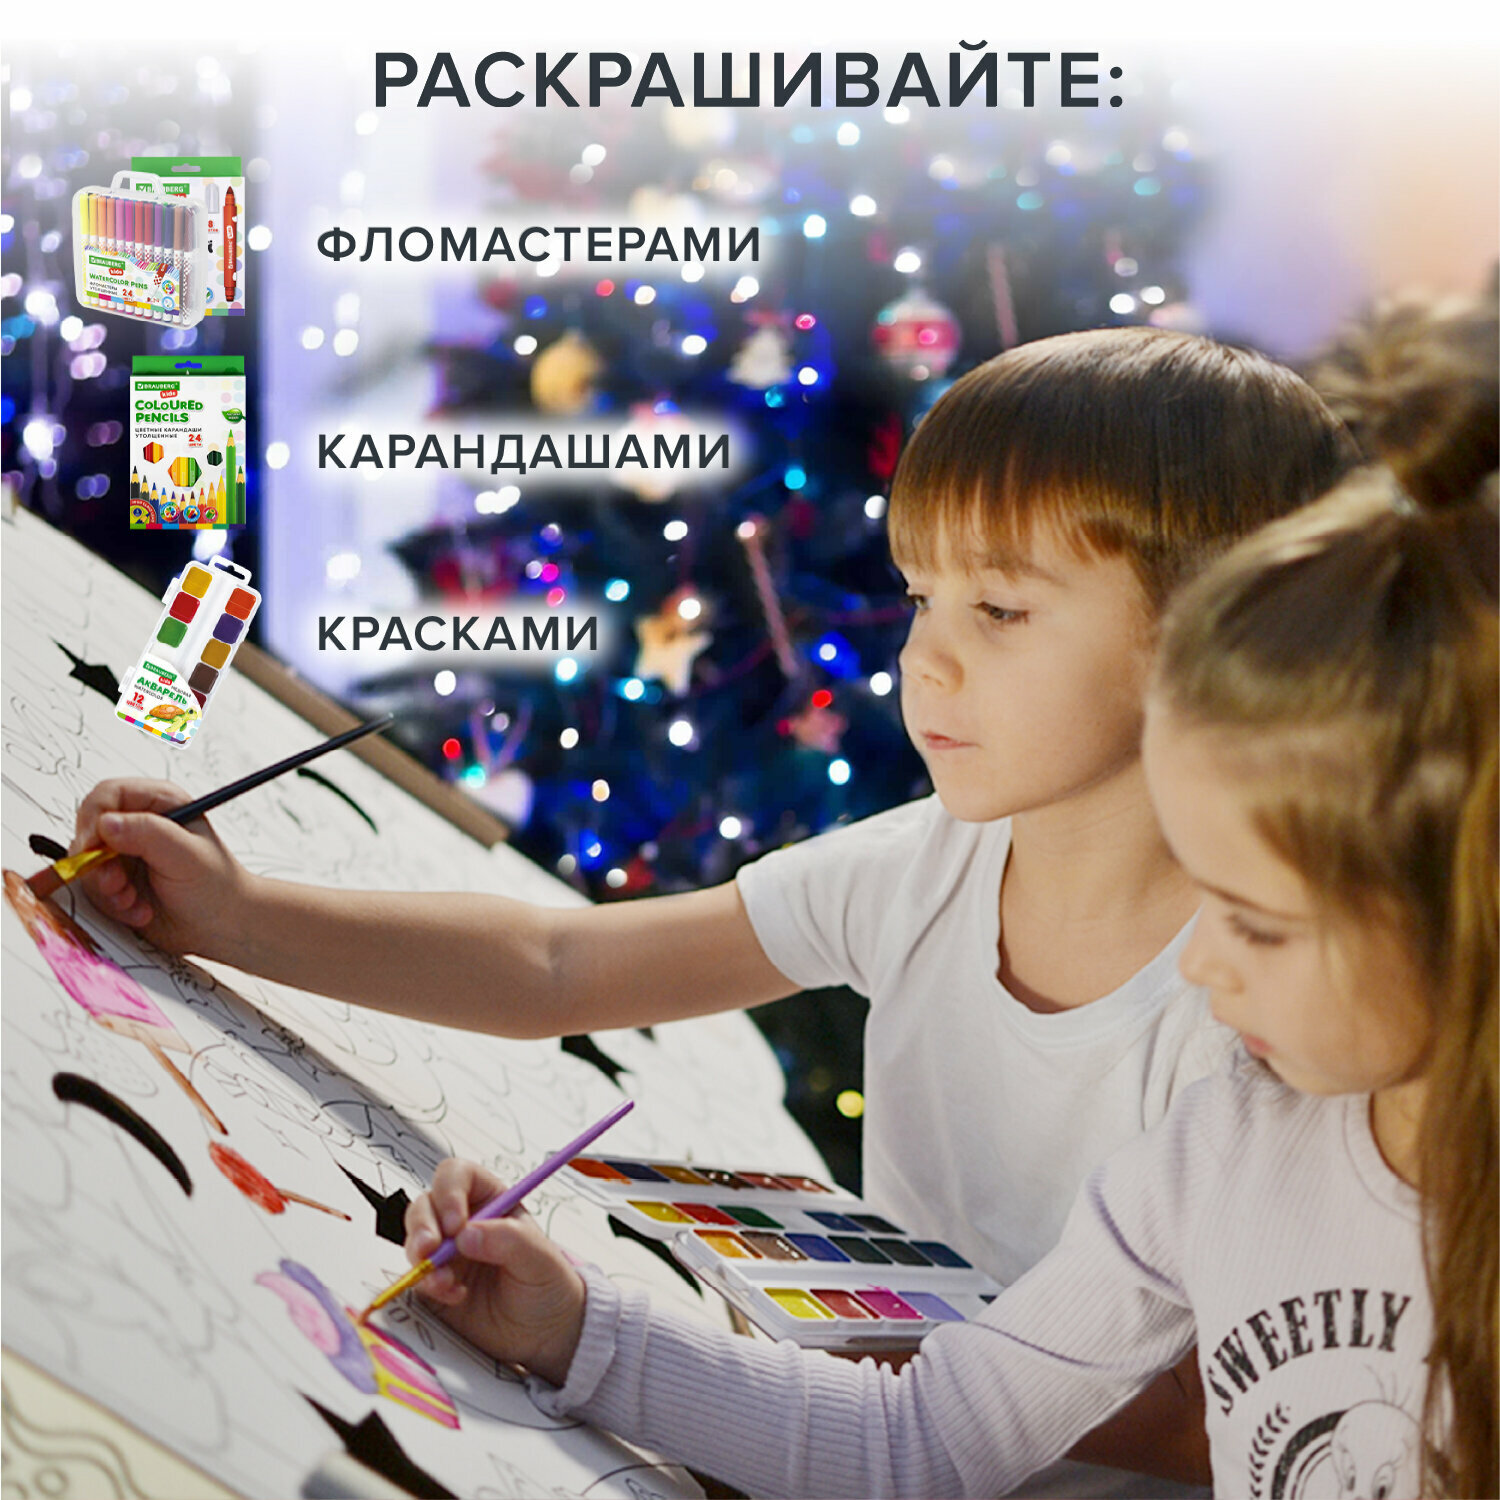 Картонный домик раскраска, игровой развивающий подарок детский "Новогодний", высота 130 см, BRAUBERG kids, 880365